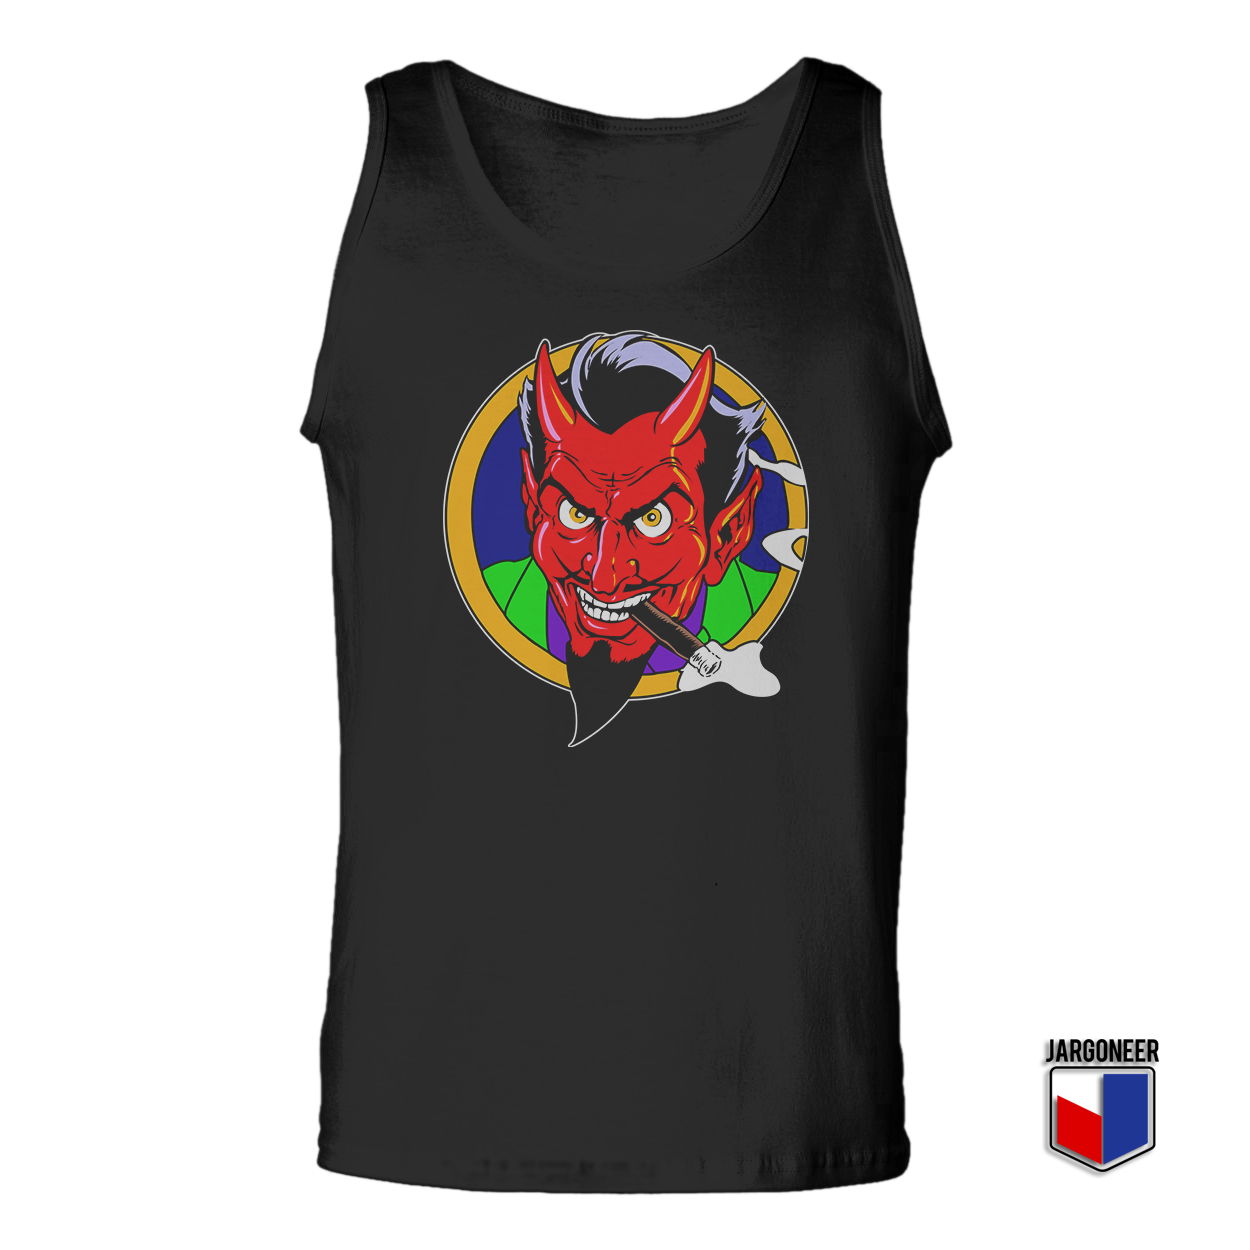 The Red Devil Face Black Tank Top - Shop Unique Graphic Cool Shirt Designs